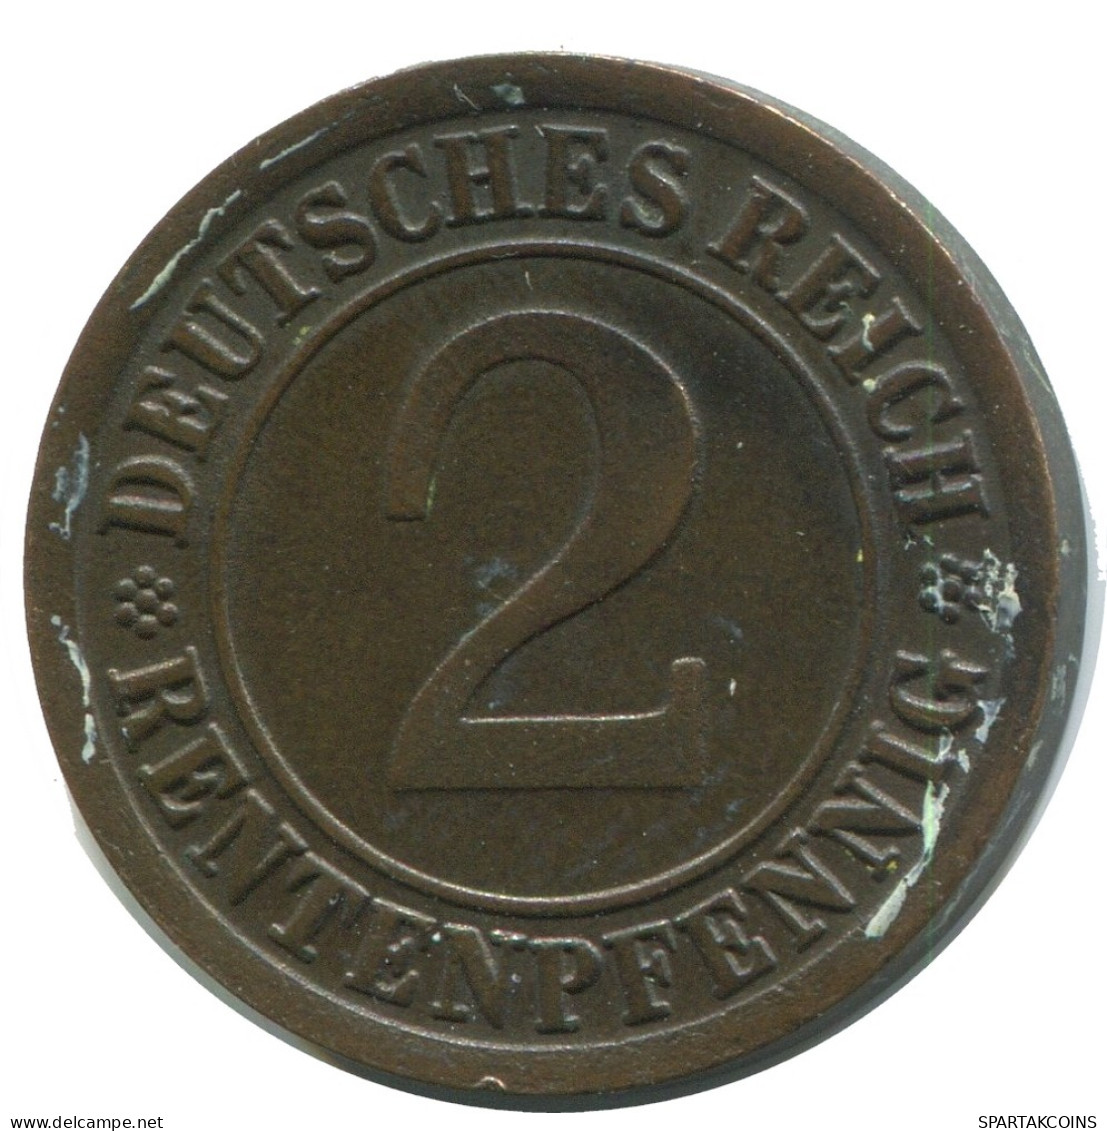 2 RENTENPFENNIG 1924 J GERMANY Coin #AD463.9.U - 2 Rentenpfennig & 2 Reichspfennig